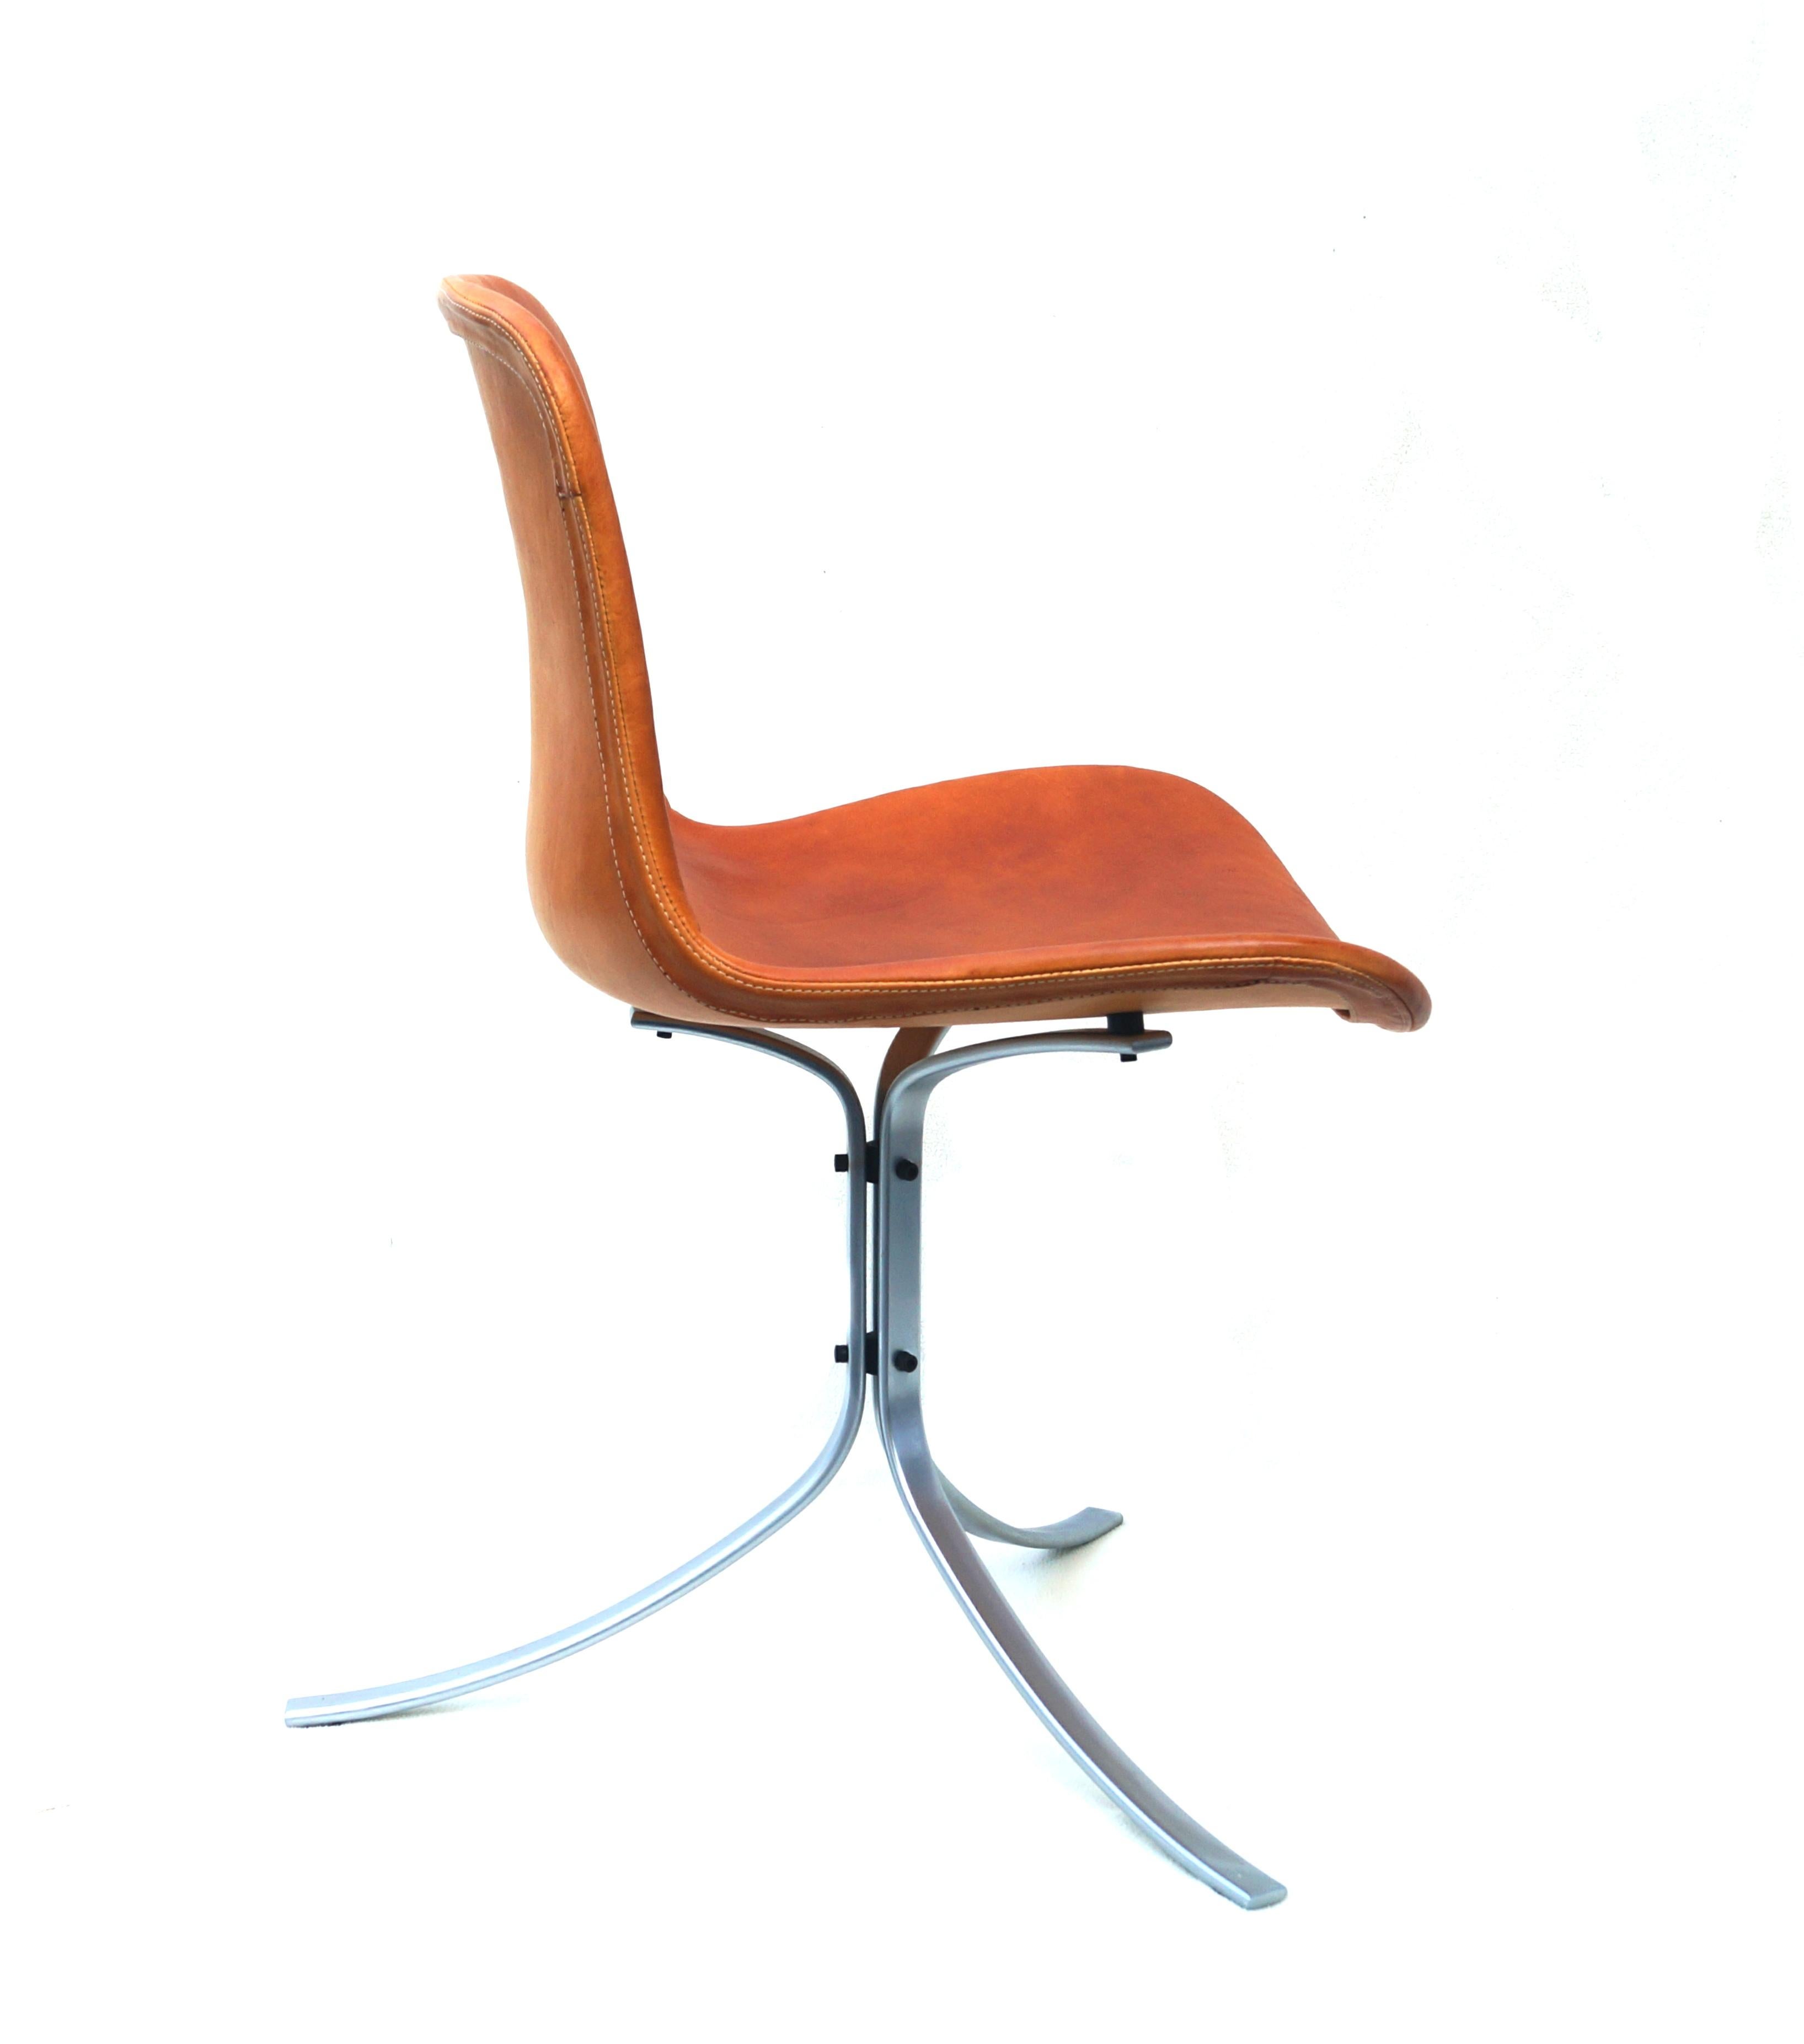 Poul Kjærholm PK-9 dining chair E. Kold Christensen Mid-Century Modern made in Denmark. There is a maker's mark.